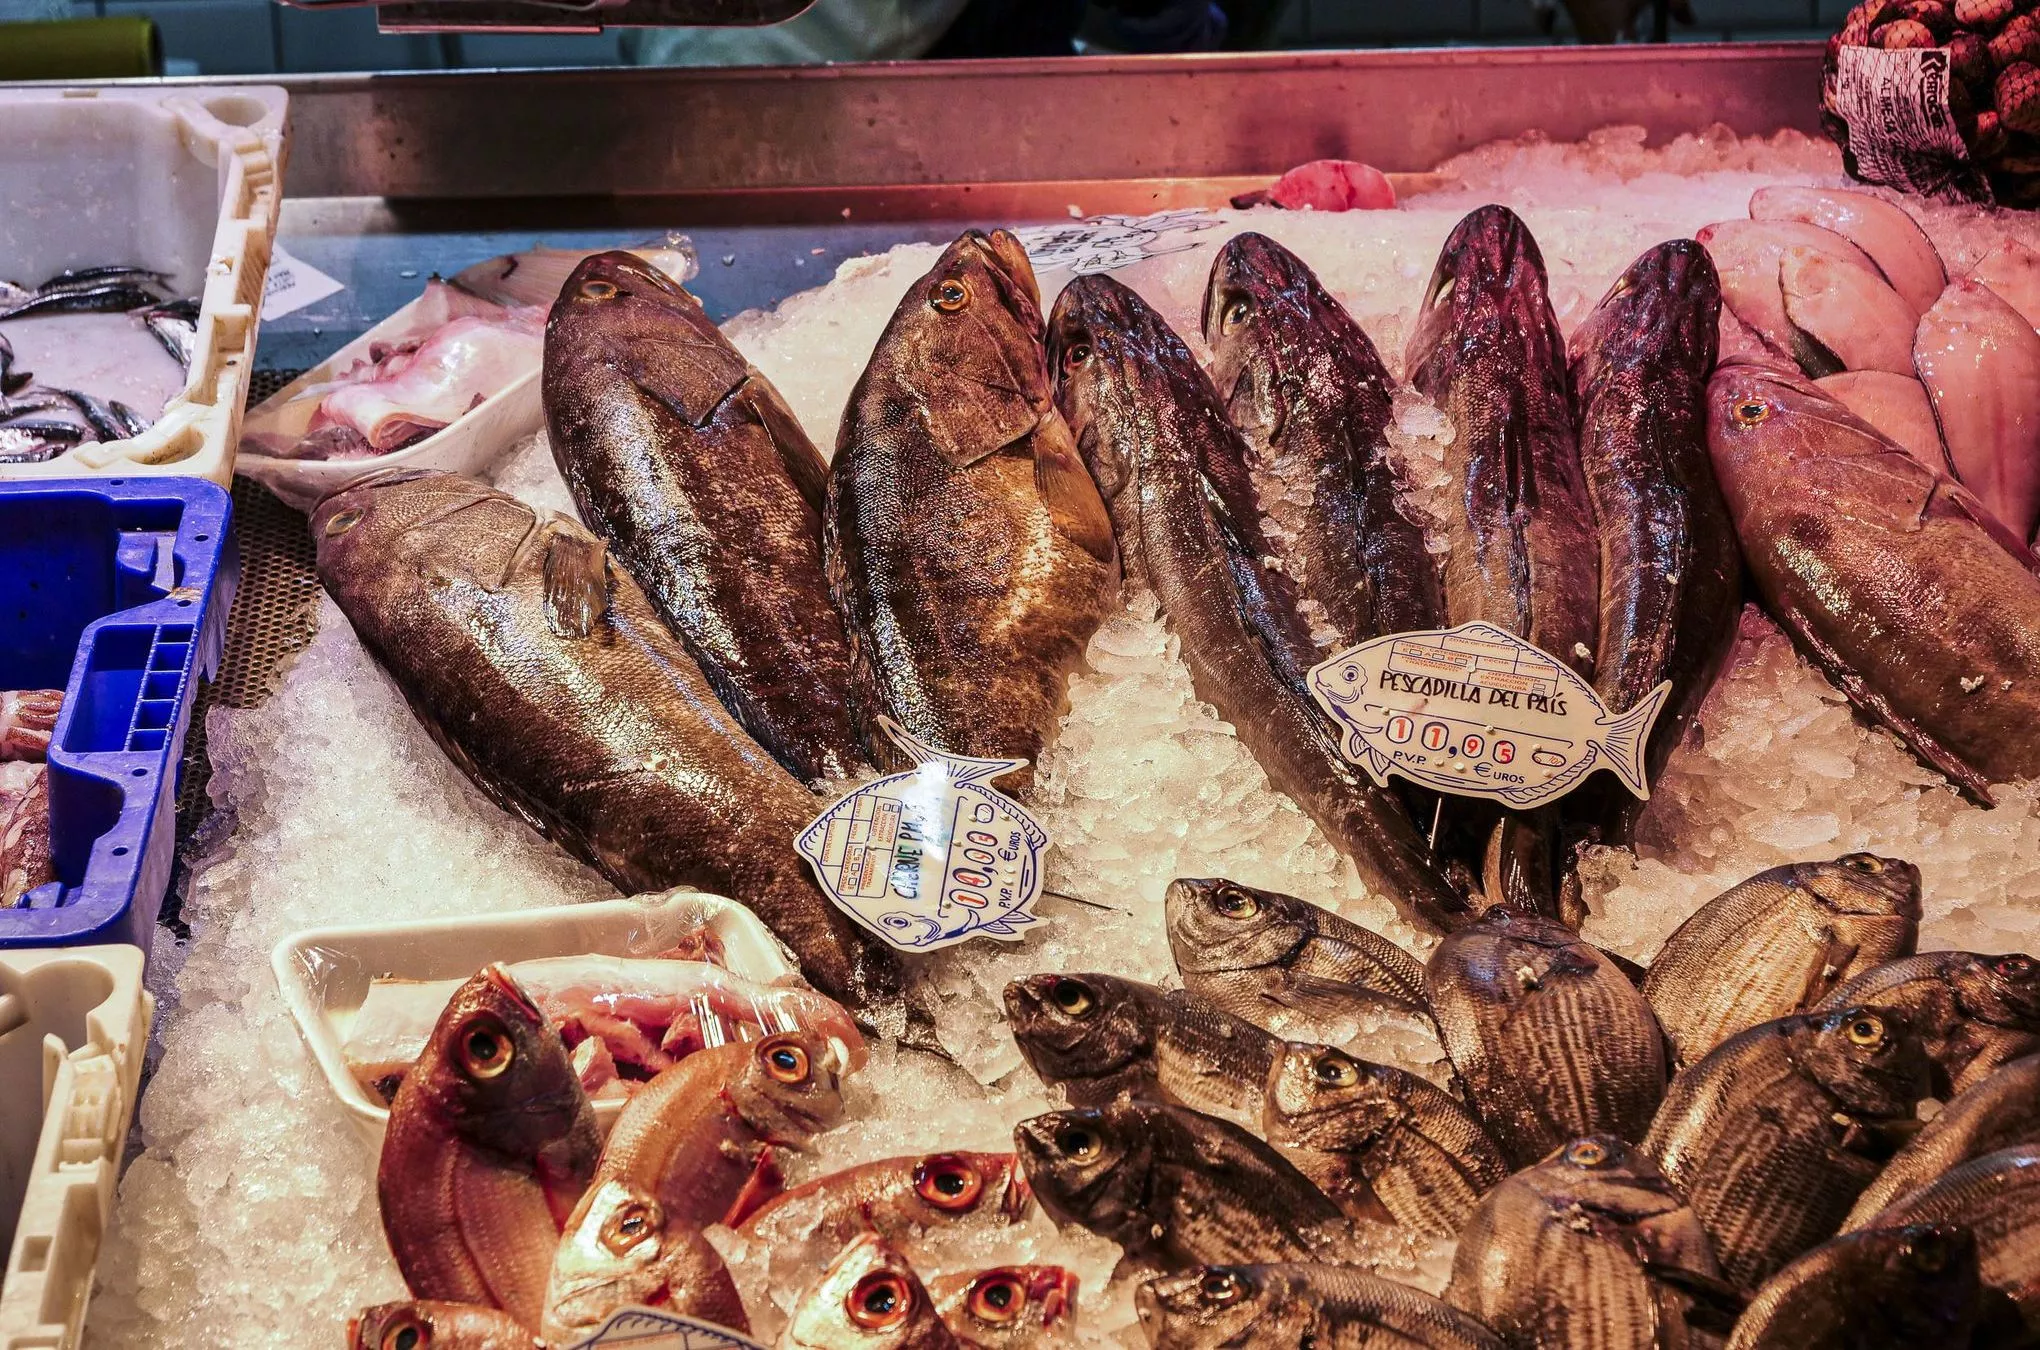 Den frischesten Fisch gibt es im Mercado del Puerto, der alten Markthalle am Hafen